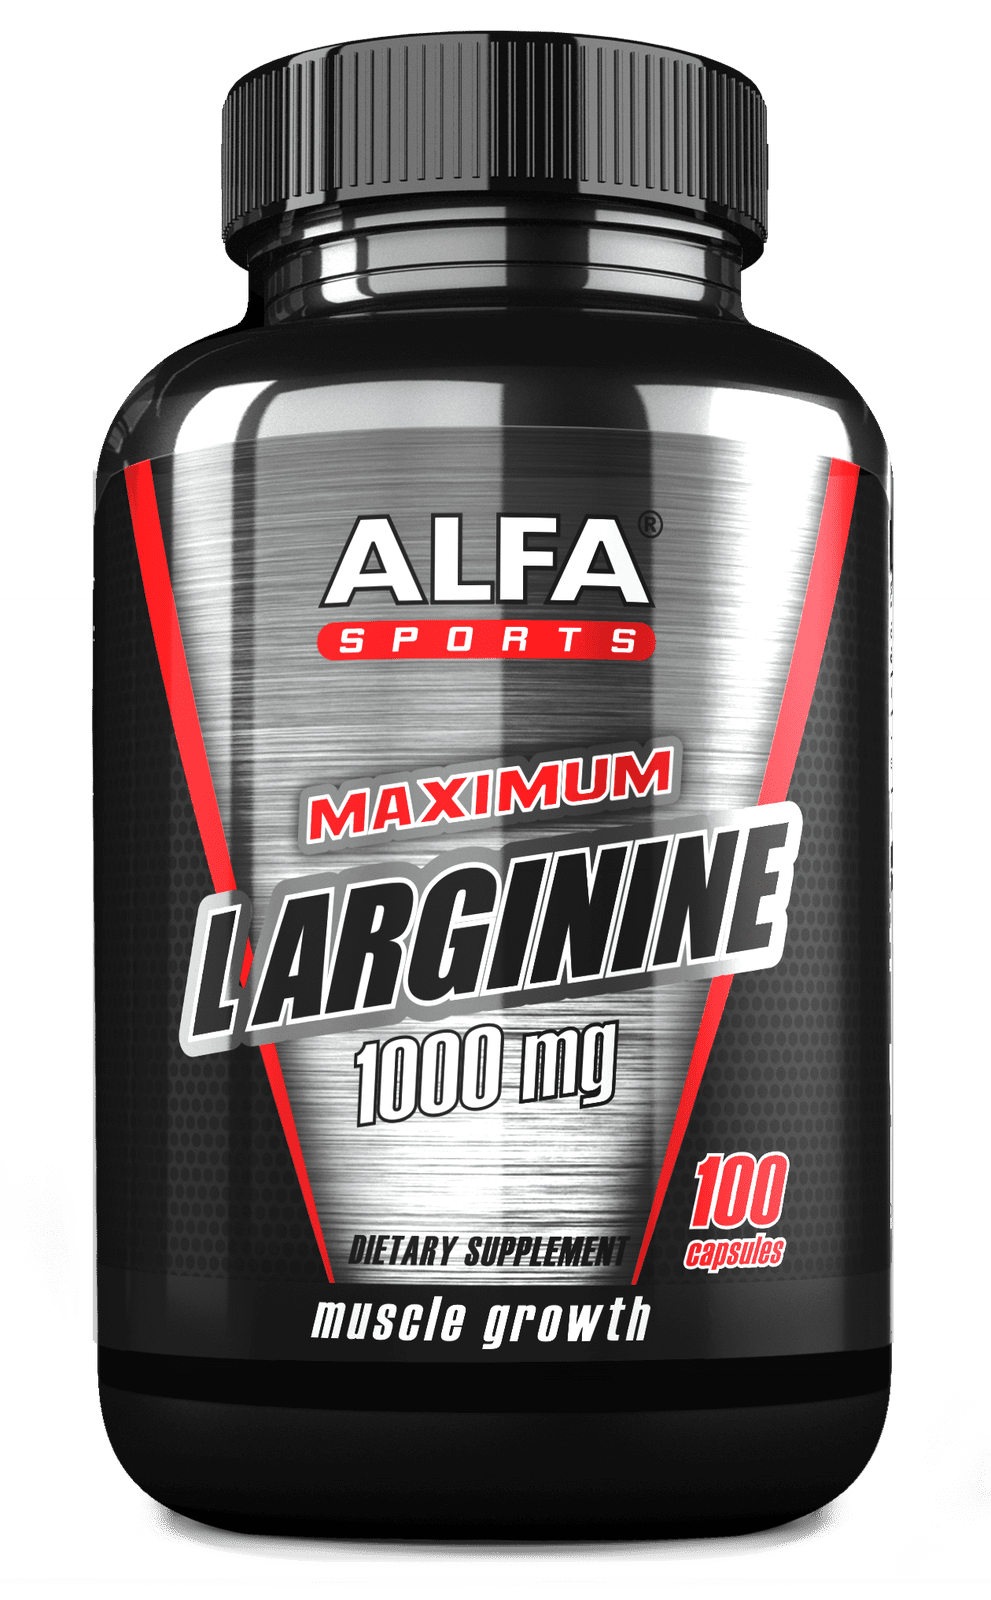 MAXIMUM L ARGININE 1000MG